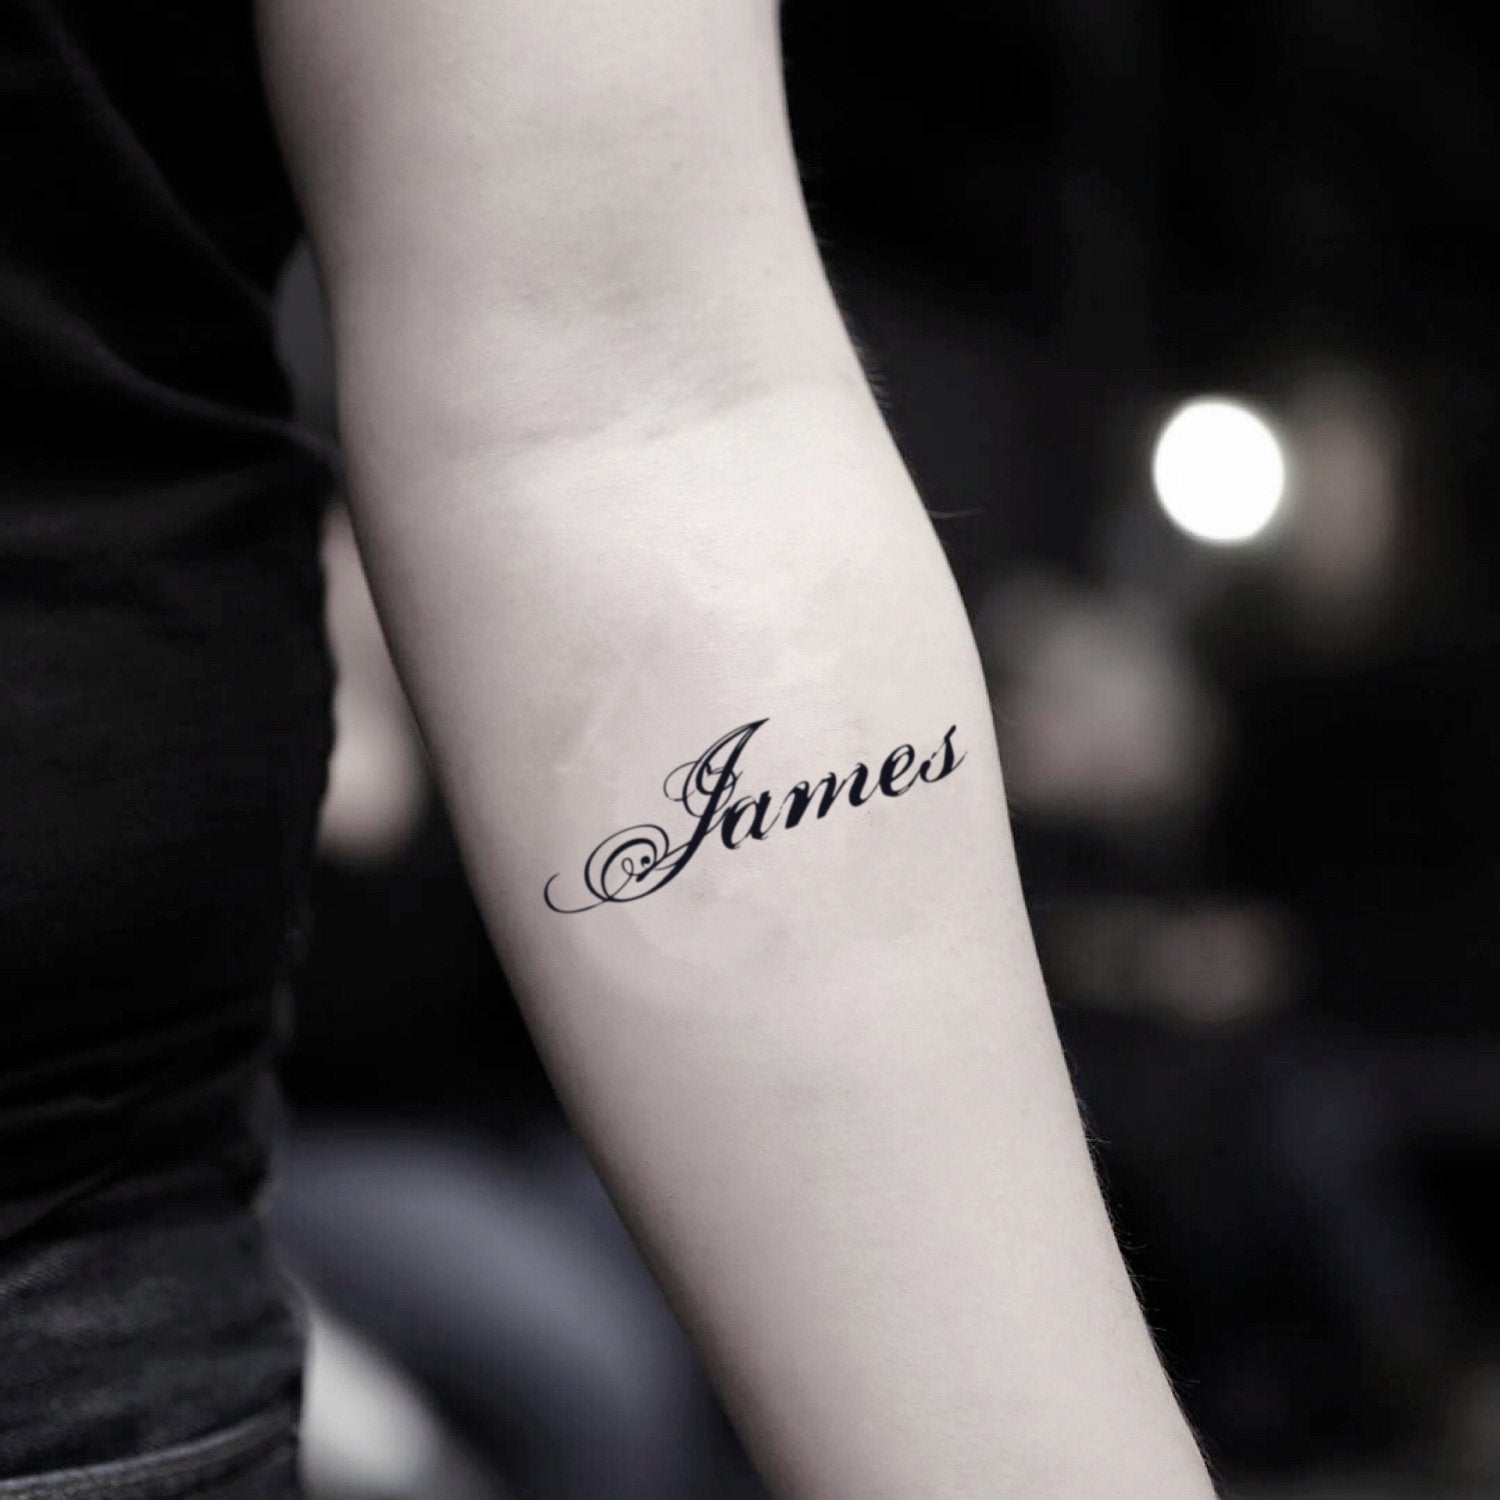 Lebron james tattoo | Lebron james tattoos, Tattoos, Ink tattoo